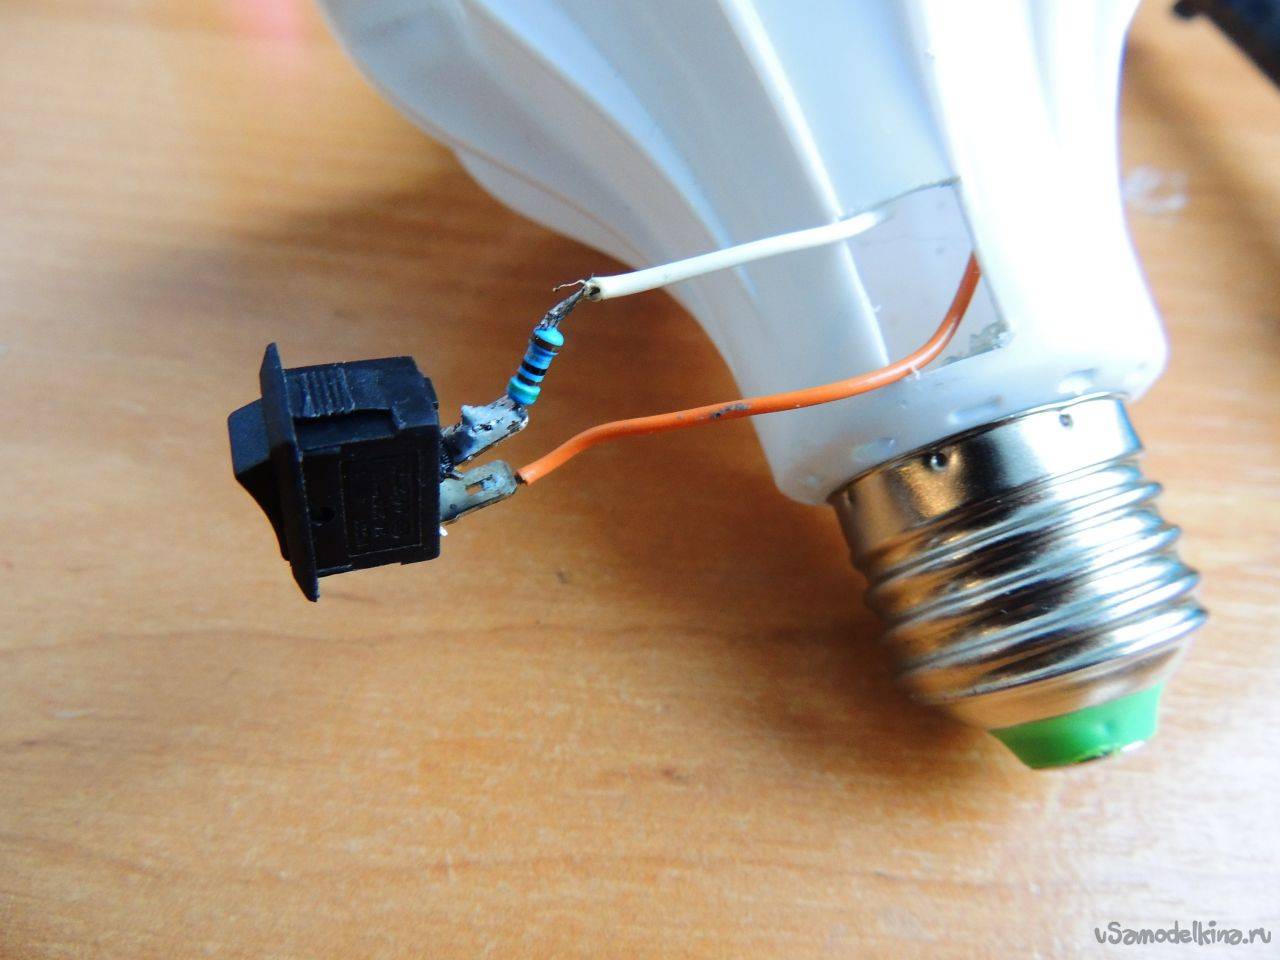 Светодиодная лампа своими руками: как и из каких материалов сделать самостоятельно